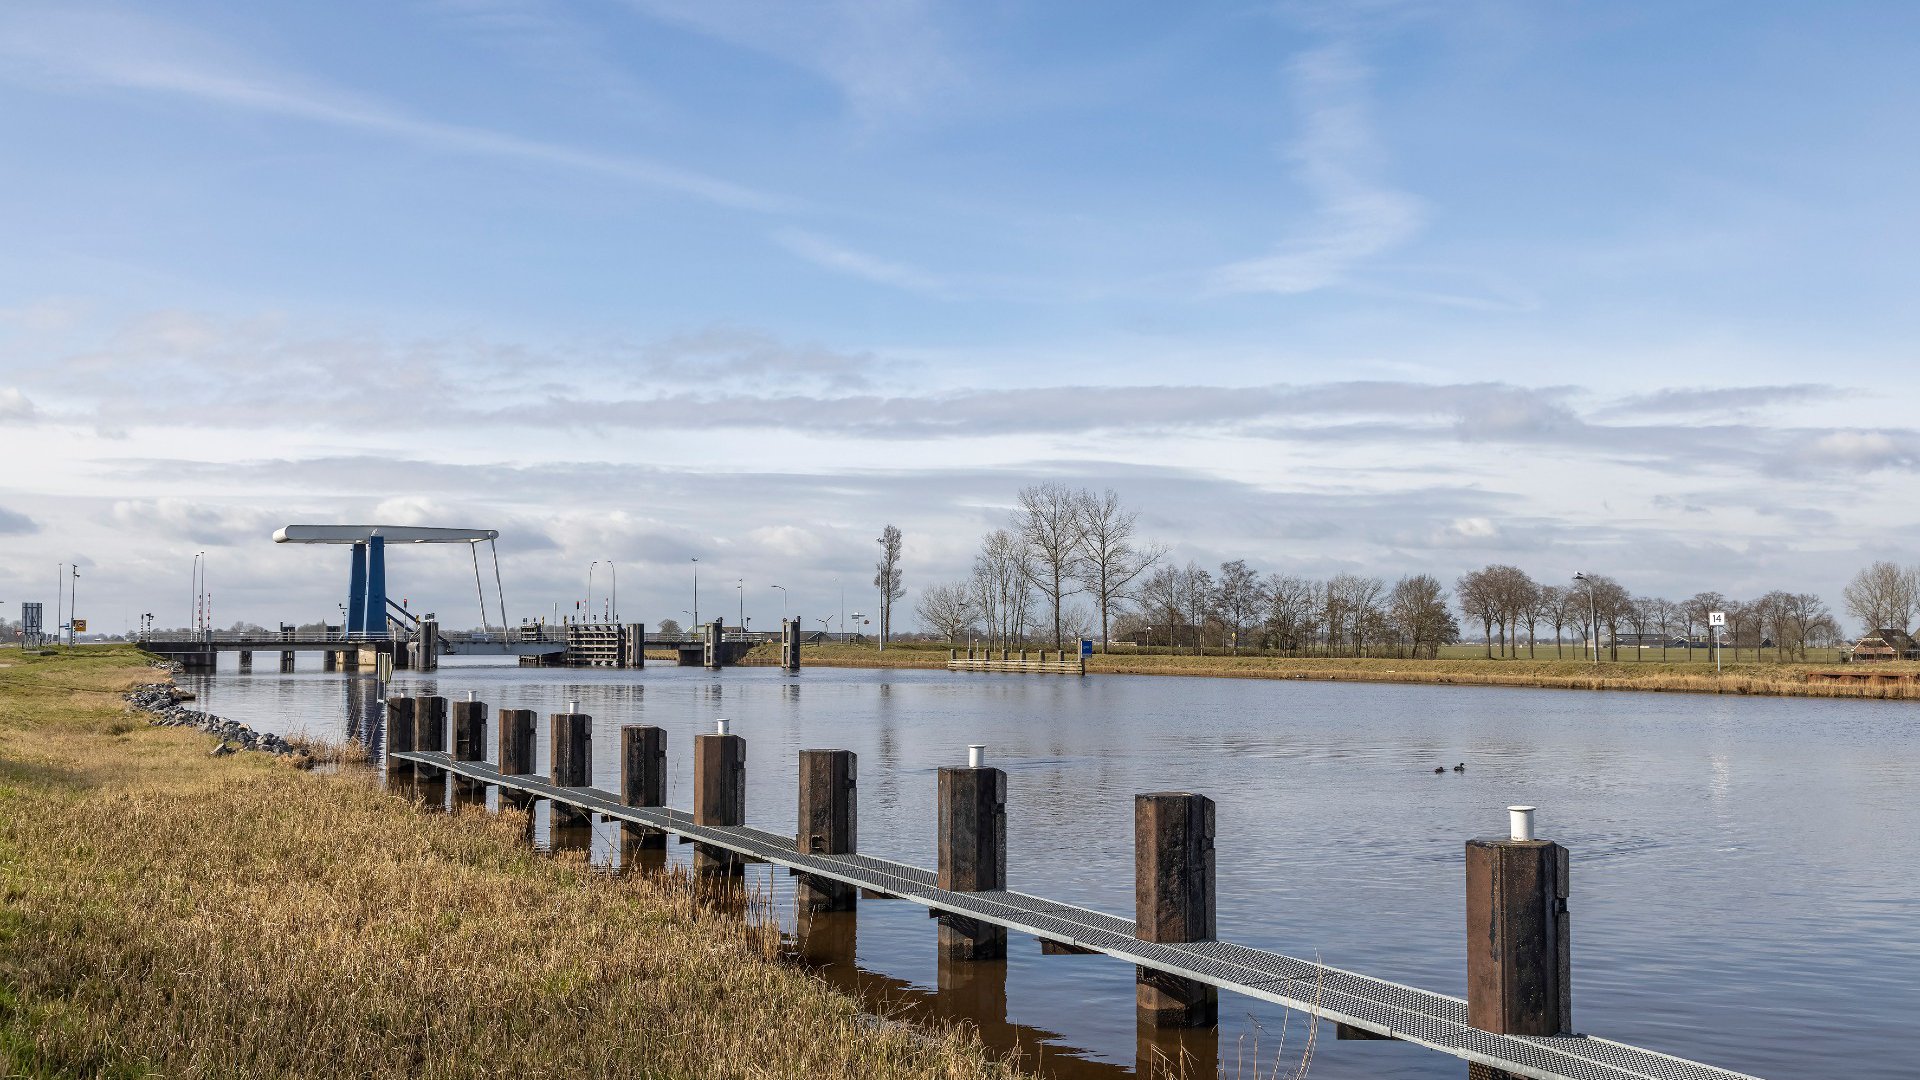 Heijmans waterwerken vaarwegen Lemmer Delfzijl natte infra 3.jpg